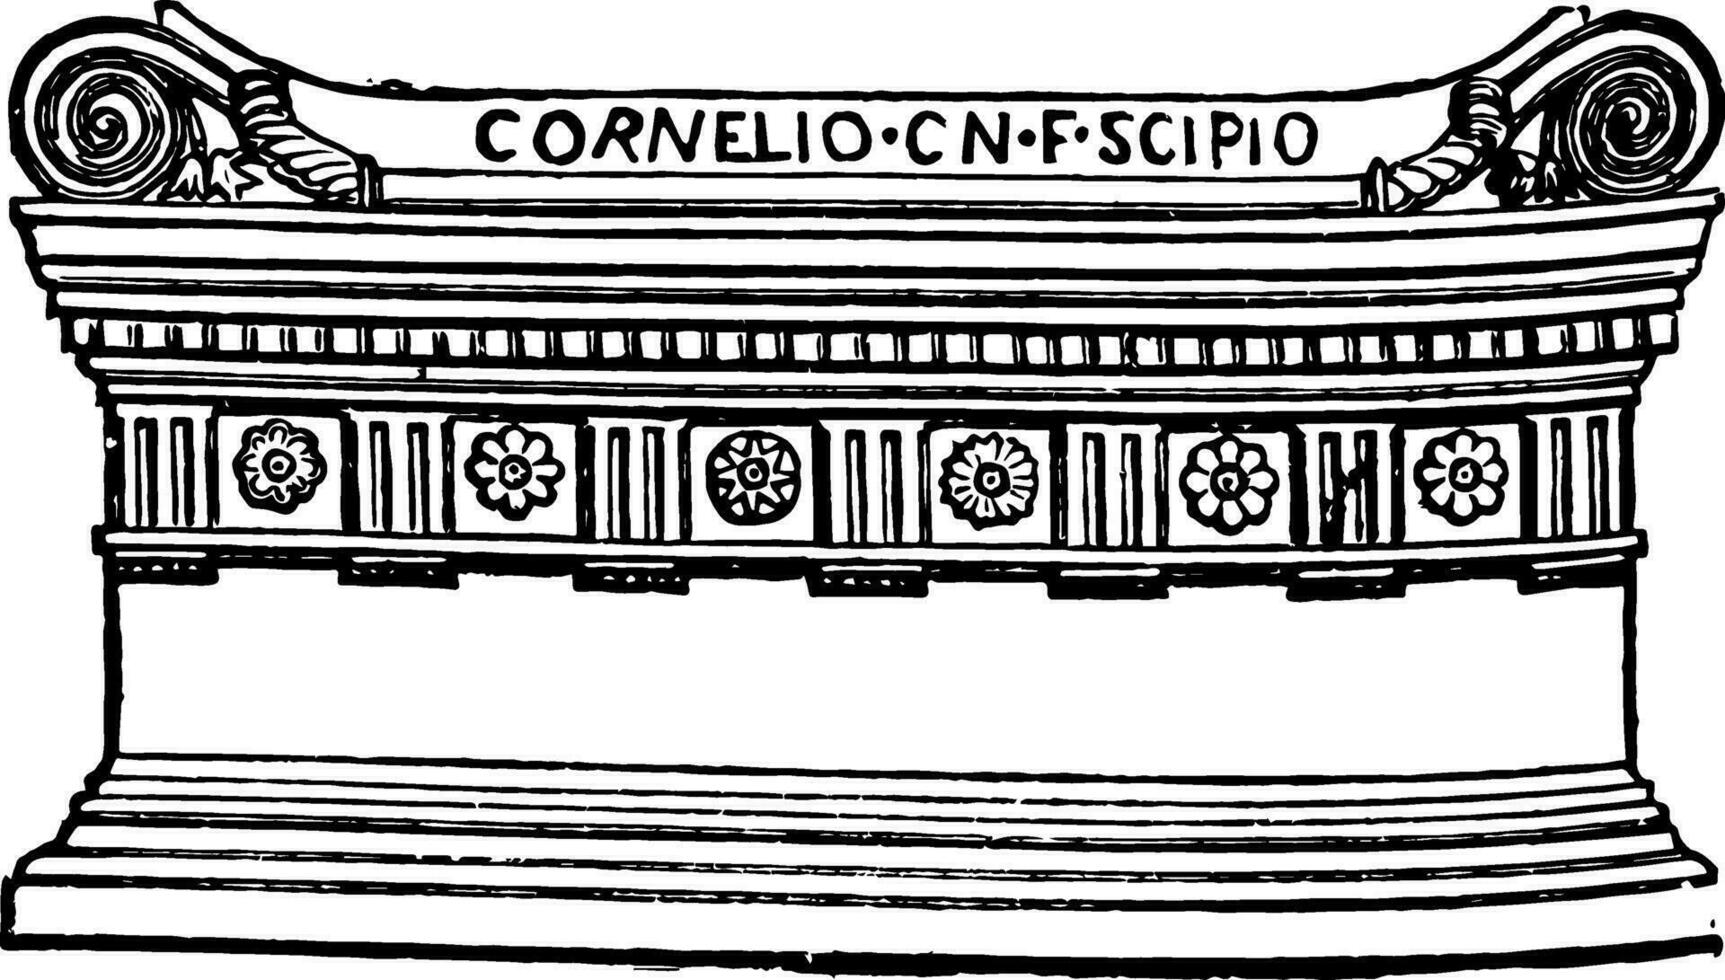 Romeins sarcofaag graf, een lijkkist of graf van steen, wijnoogst gravure. vector